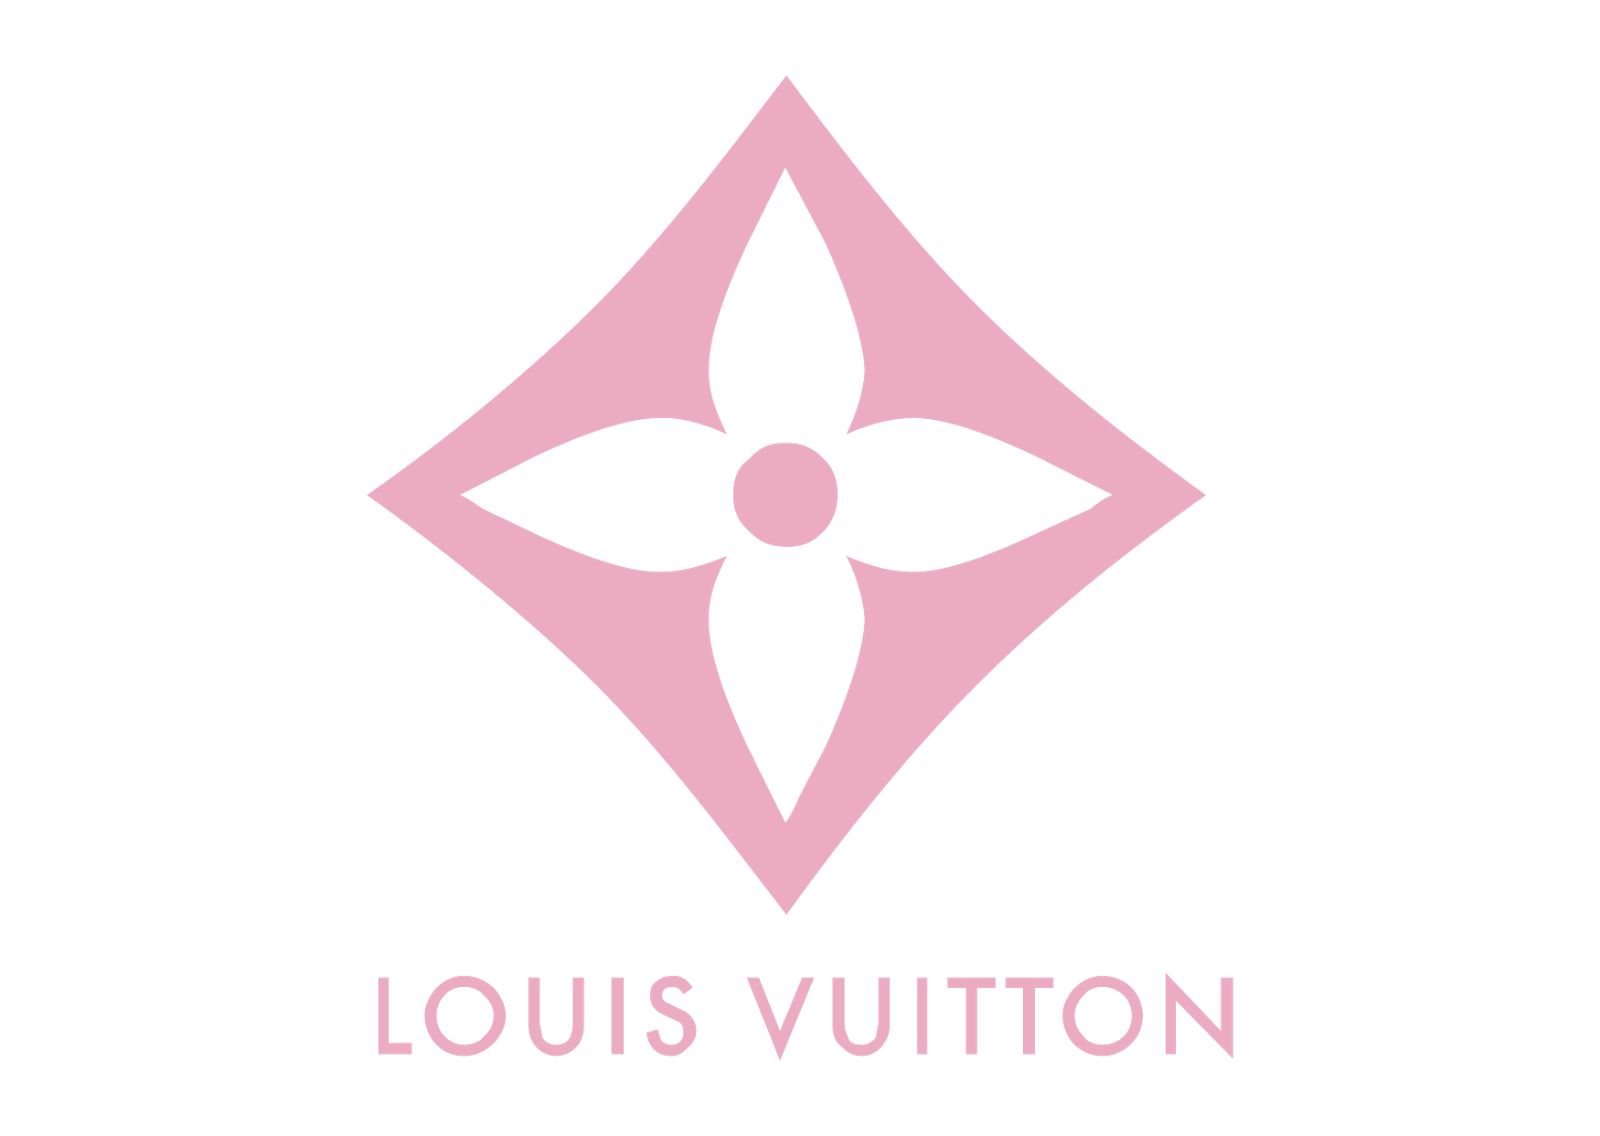 Louis Vuitton Bunny Logo SVG